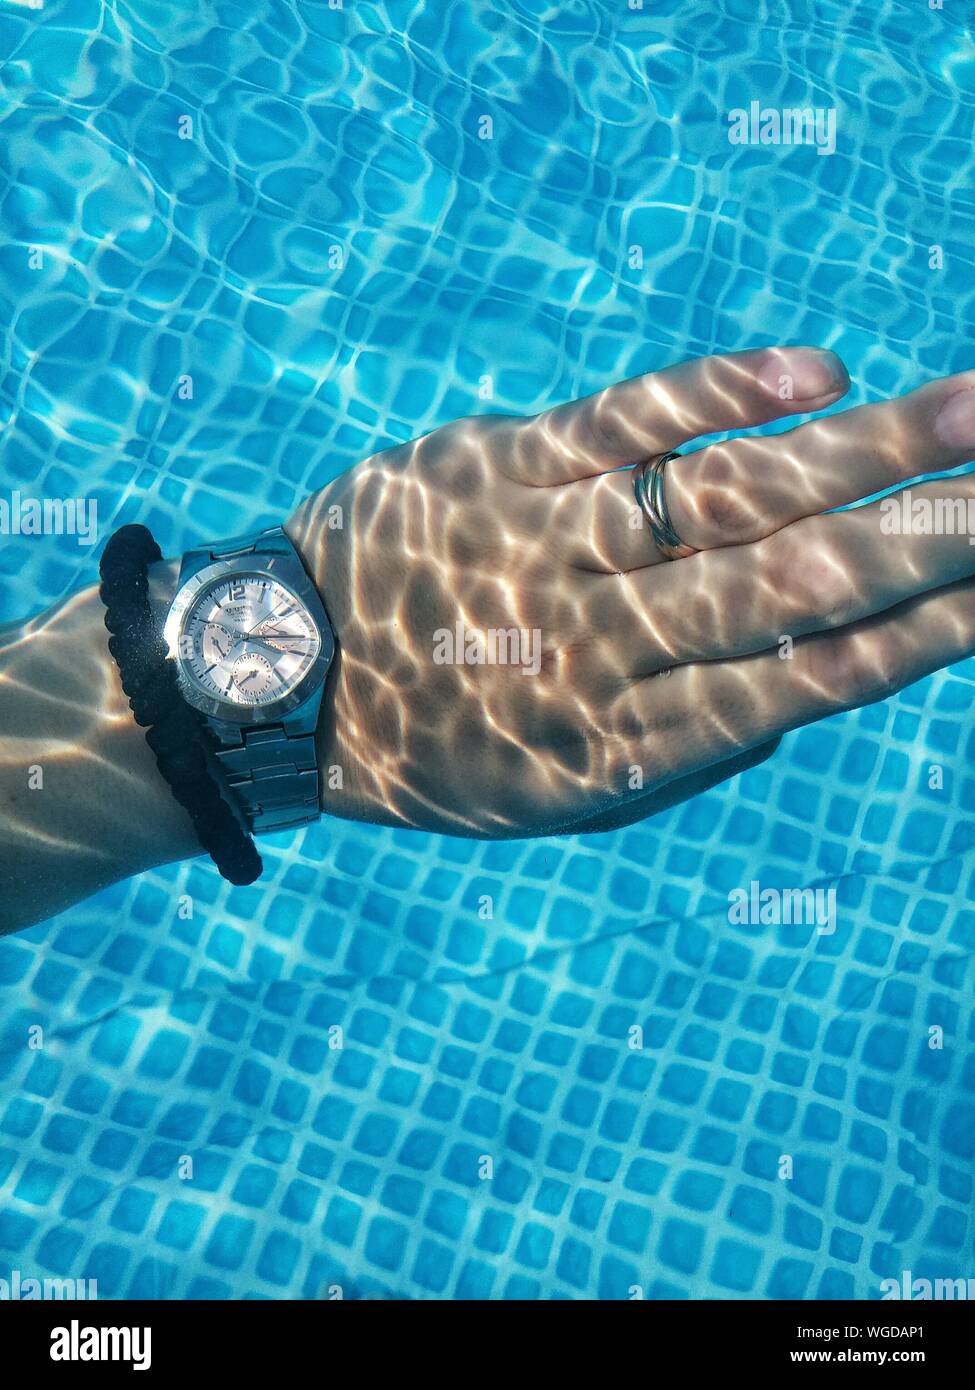 swimming wrist watch